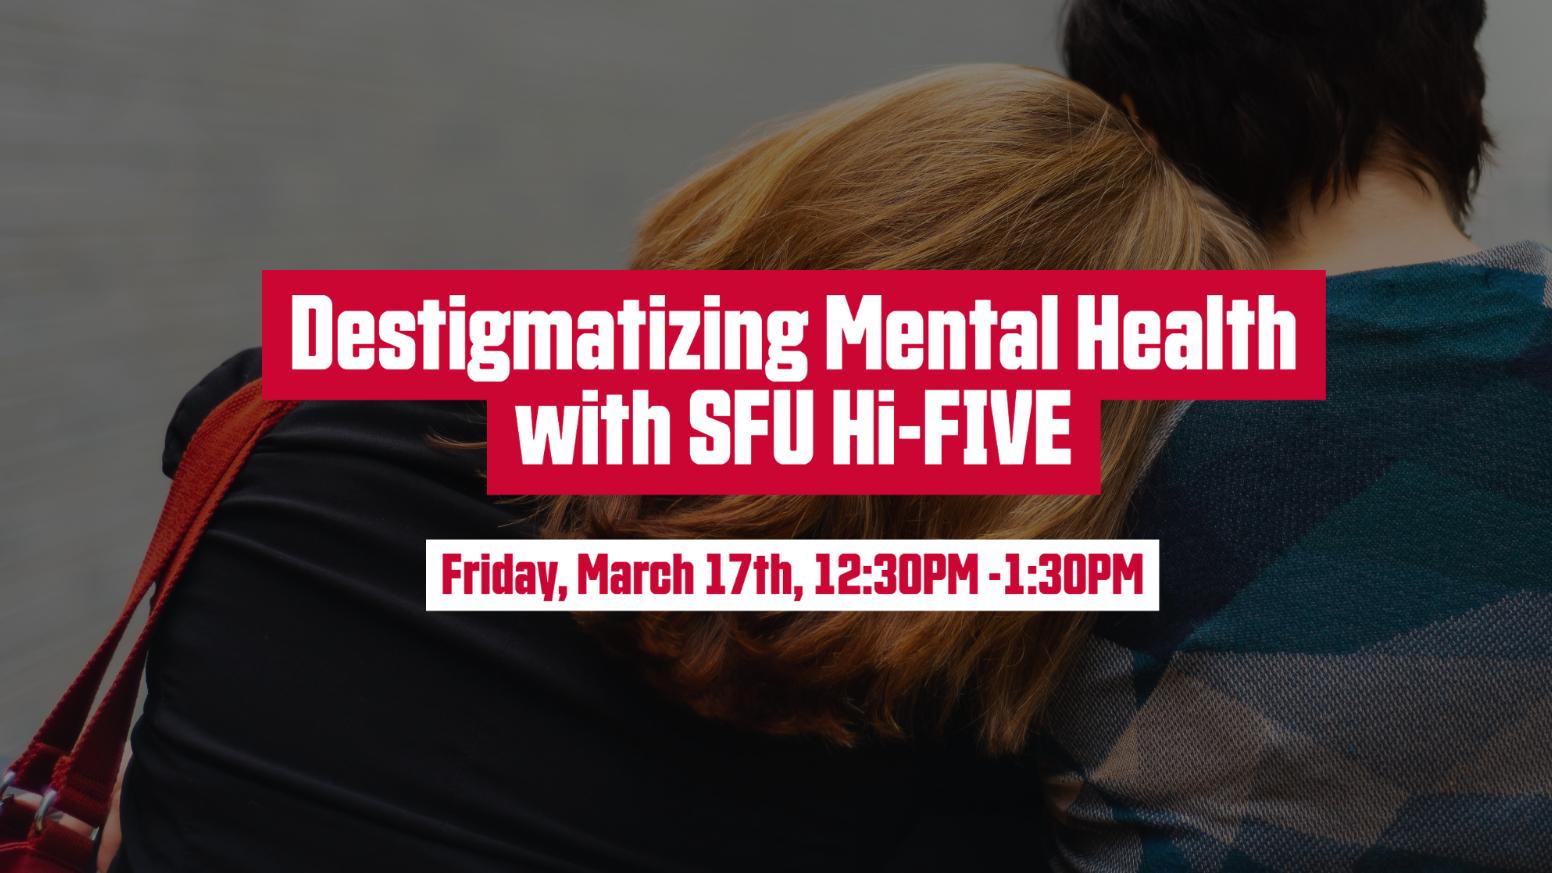 Friday, March 17: Destigmatizing Mental Health with SFU Hi-FIVE